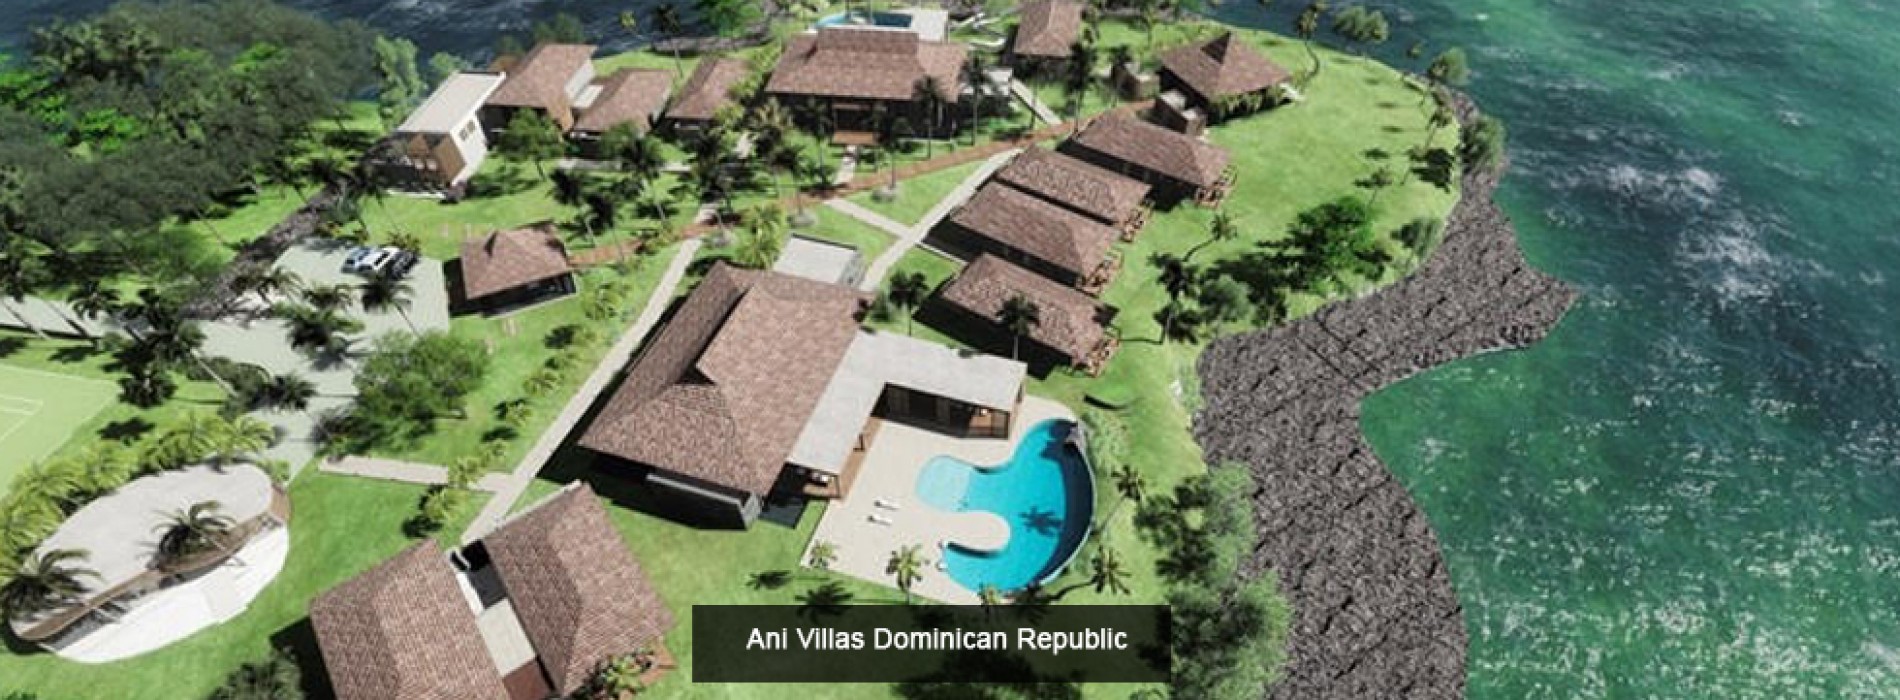 Ani Villas to open Fourth Private Resort in Dominican Republic